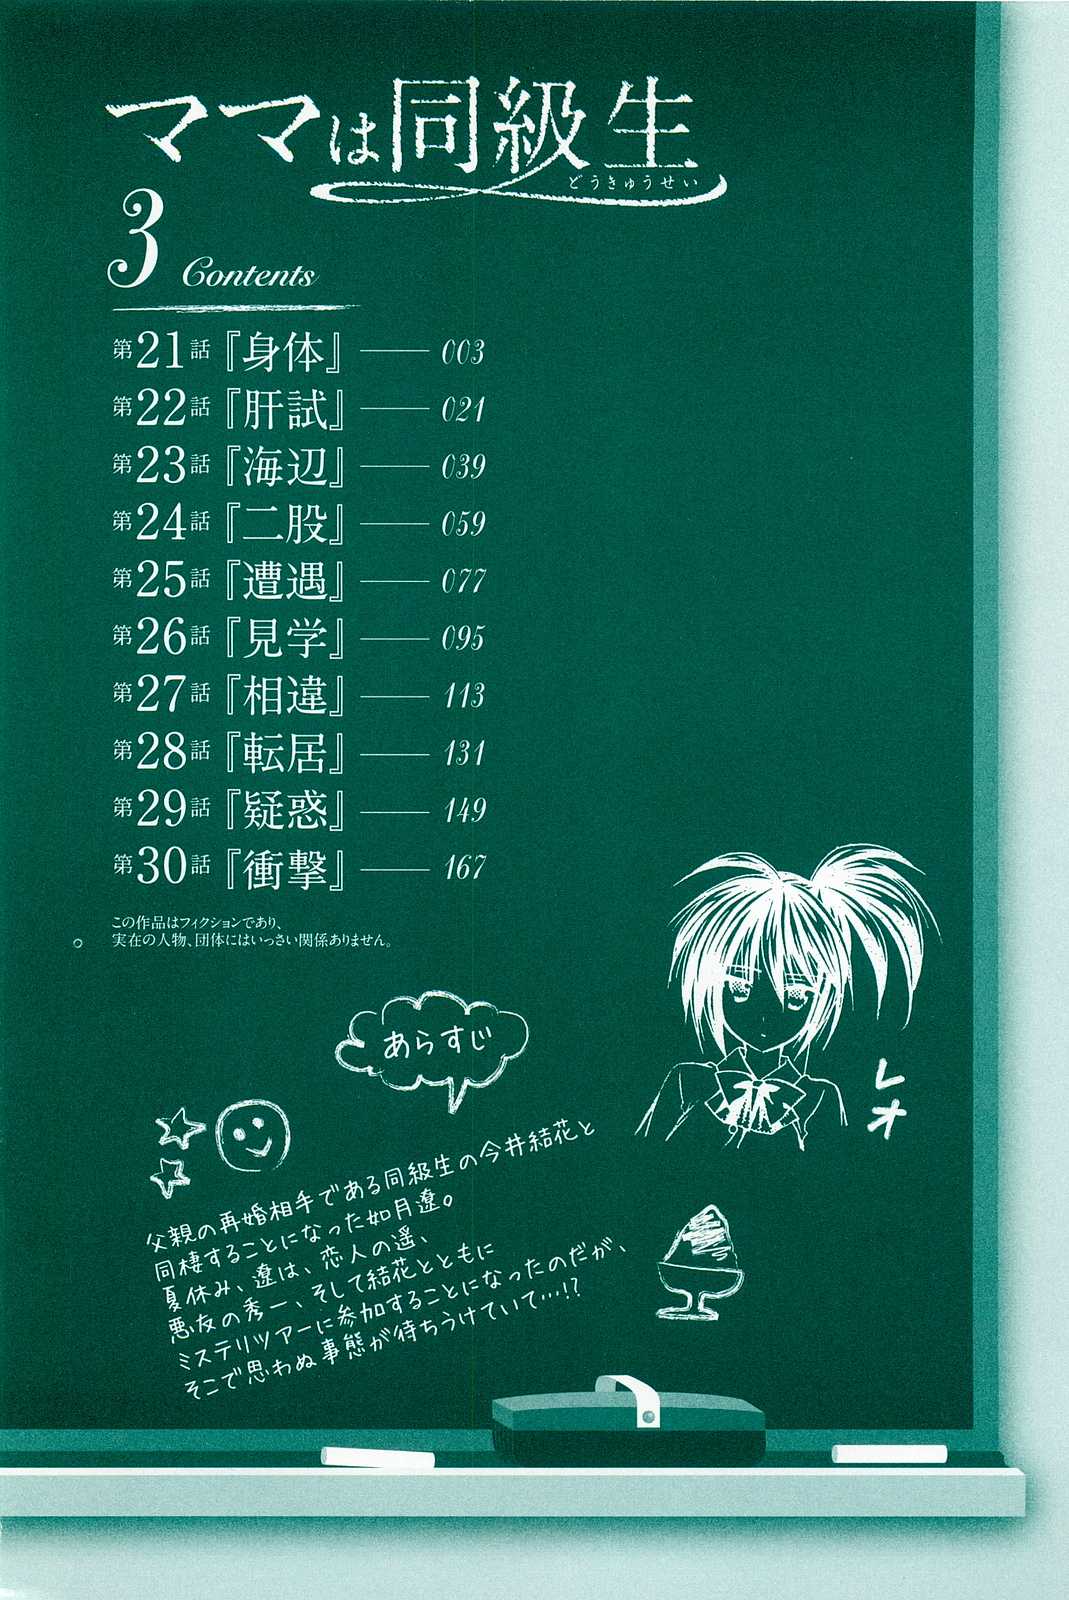 [Azuma Yuki] Mama wa Doukyuusei (Mama Is a Classmate) Vol.3 [English] [あづまゆき] ママは同級生 第3巻